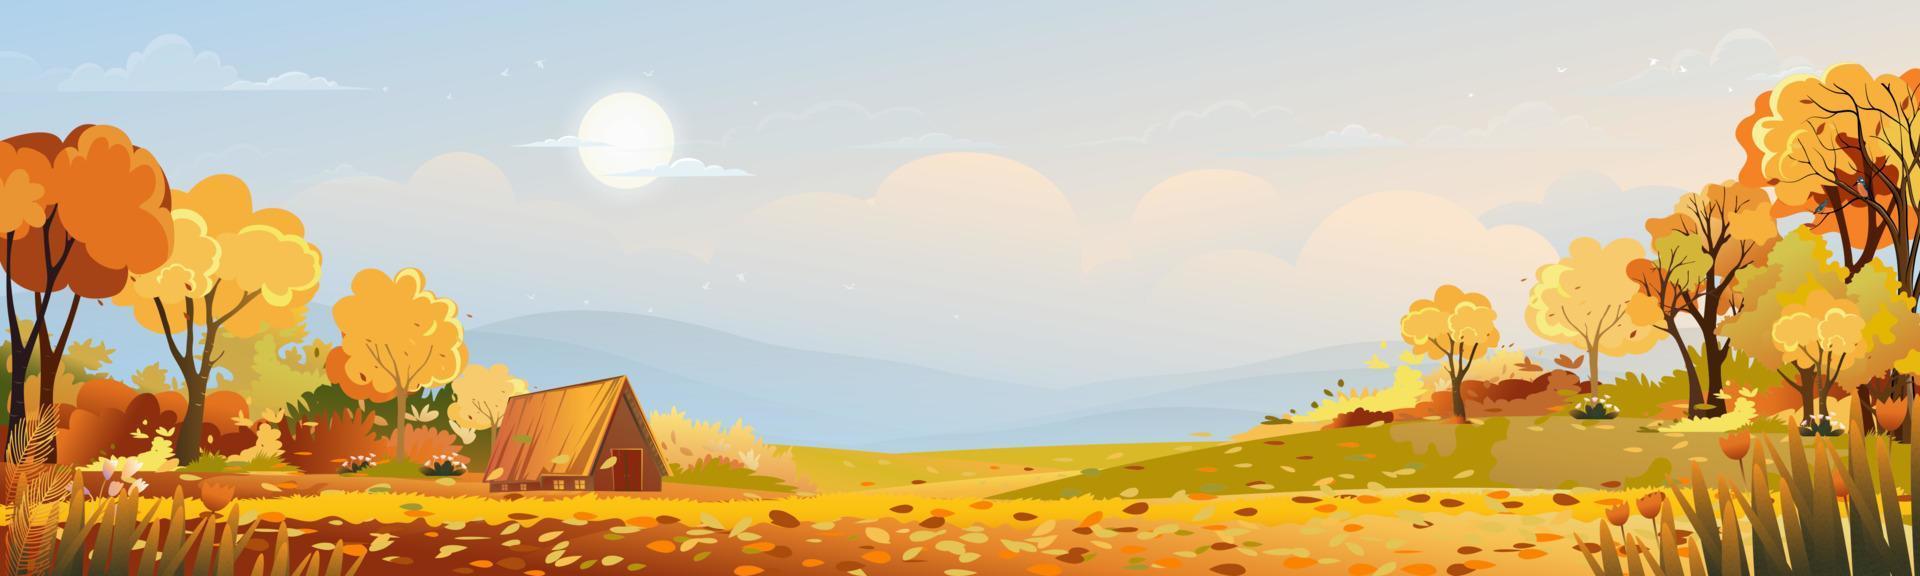 paisagem rural de outono na luz da noite com fundo do céu pôr do sol, azul e laranja, temporada de outono dos desenhos animados vetor na zona rural com árvore da floresta e campo de grama com nascer do sol, pano de fundo natural